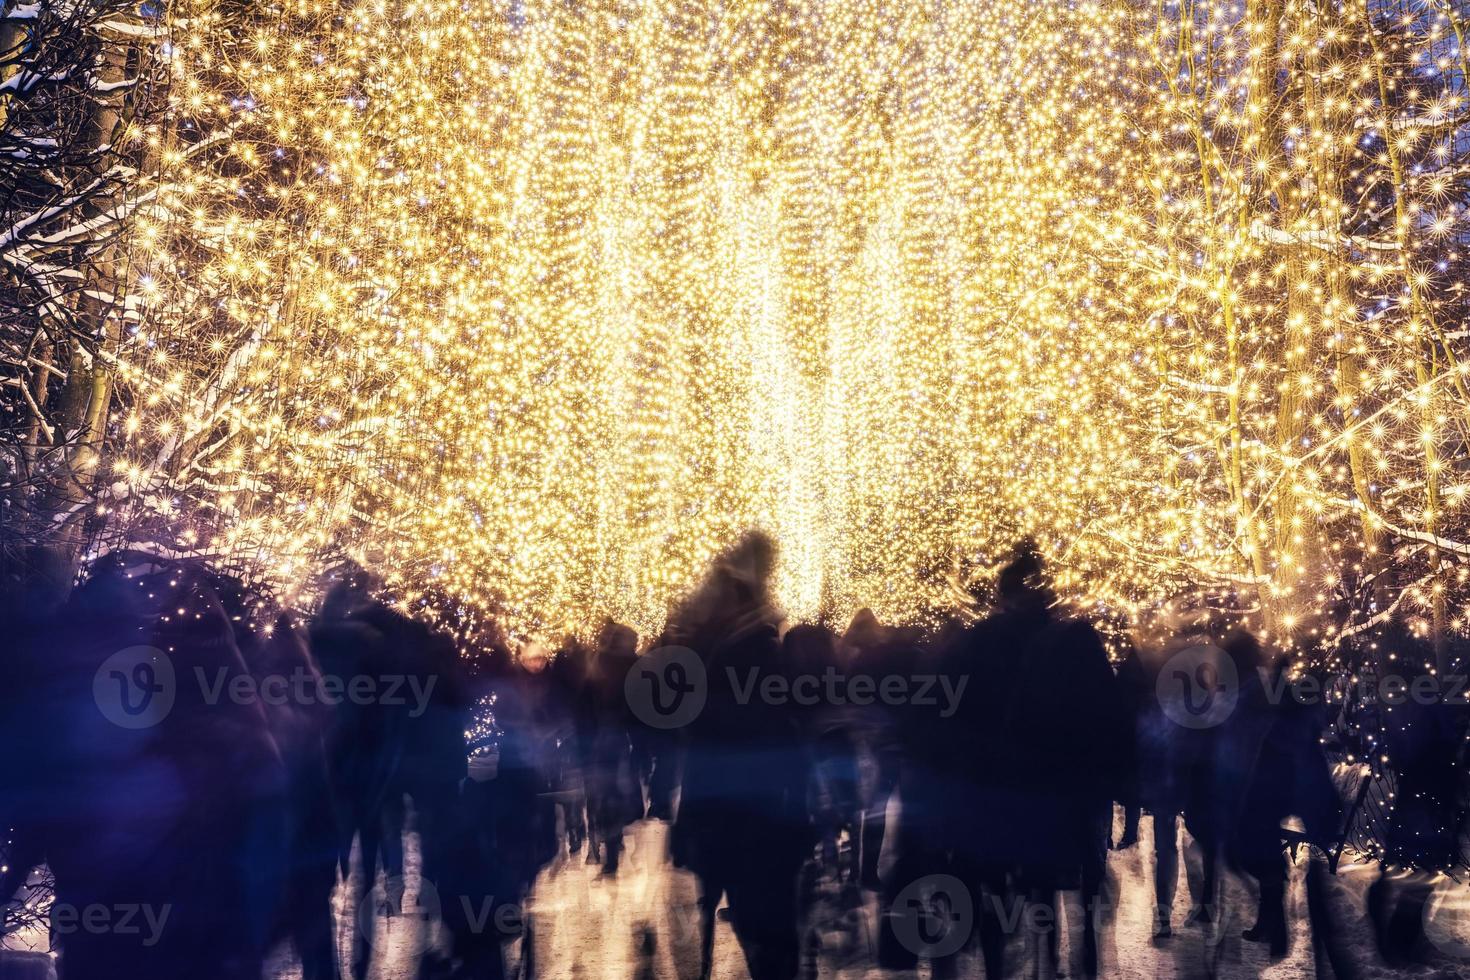 gente caminando en el parque de invierno decorado con luces navideñas foto